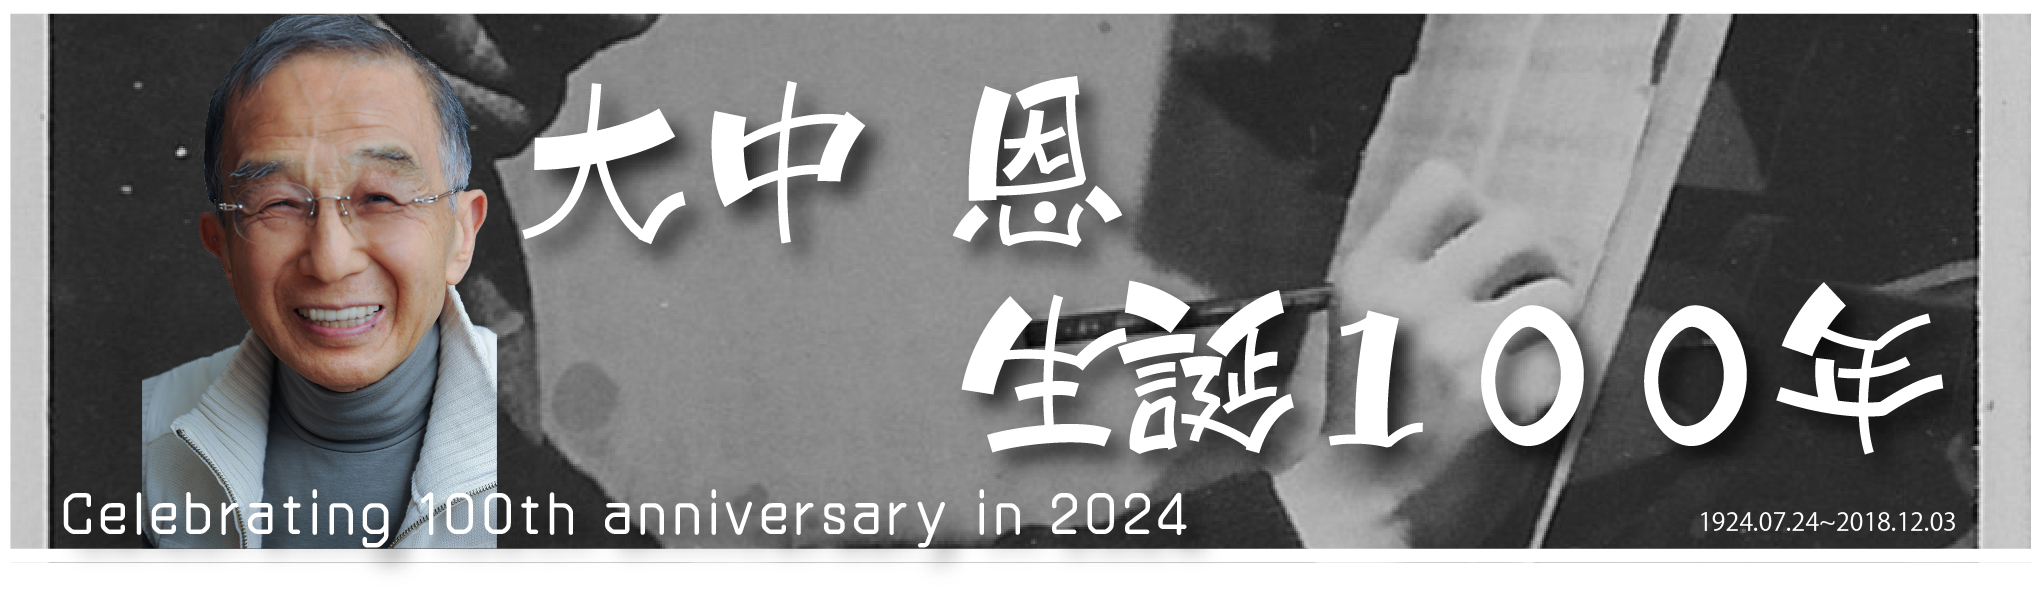 大中恩生誕100周年記念サイト